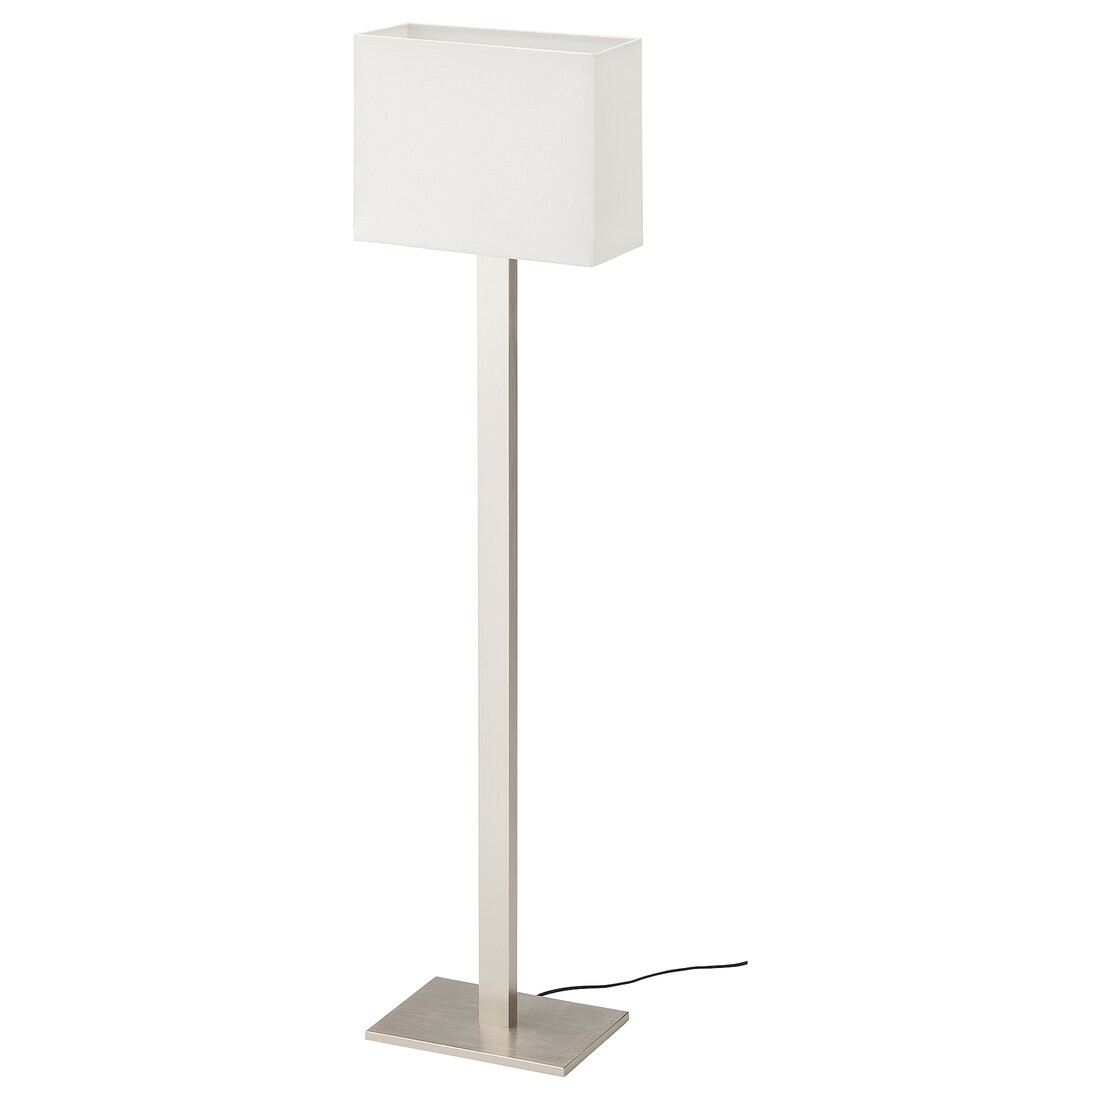 IKEA TOMELILLA ТОМЕЛИЛЛА Светильник напольный, никелированный / белый, 150 см 30464041 304.640.41